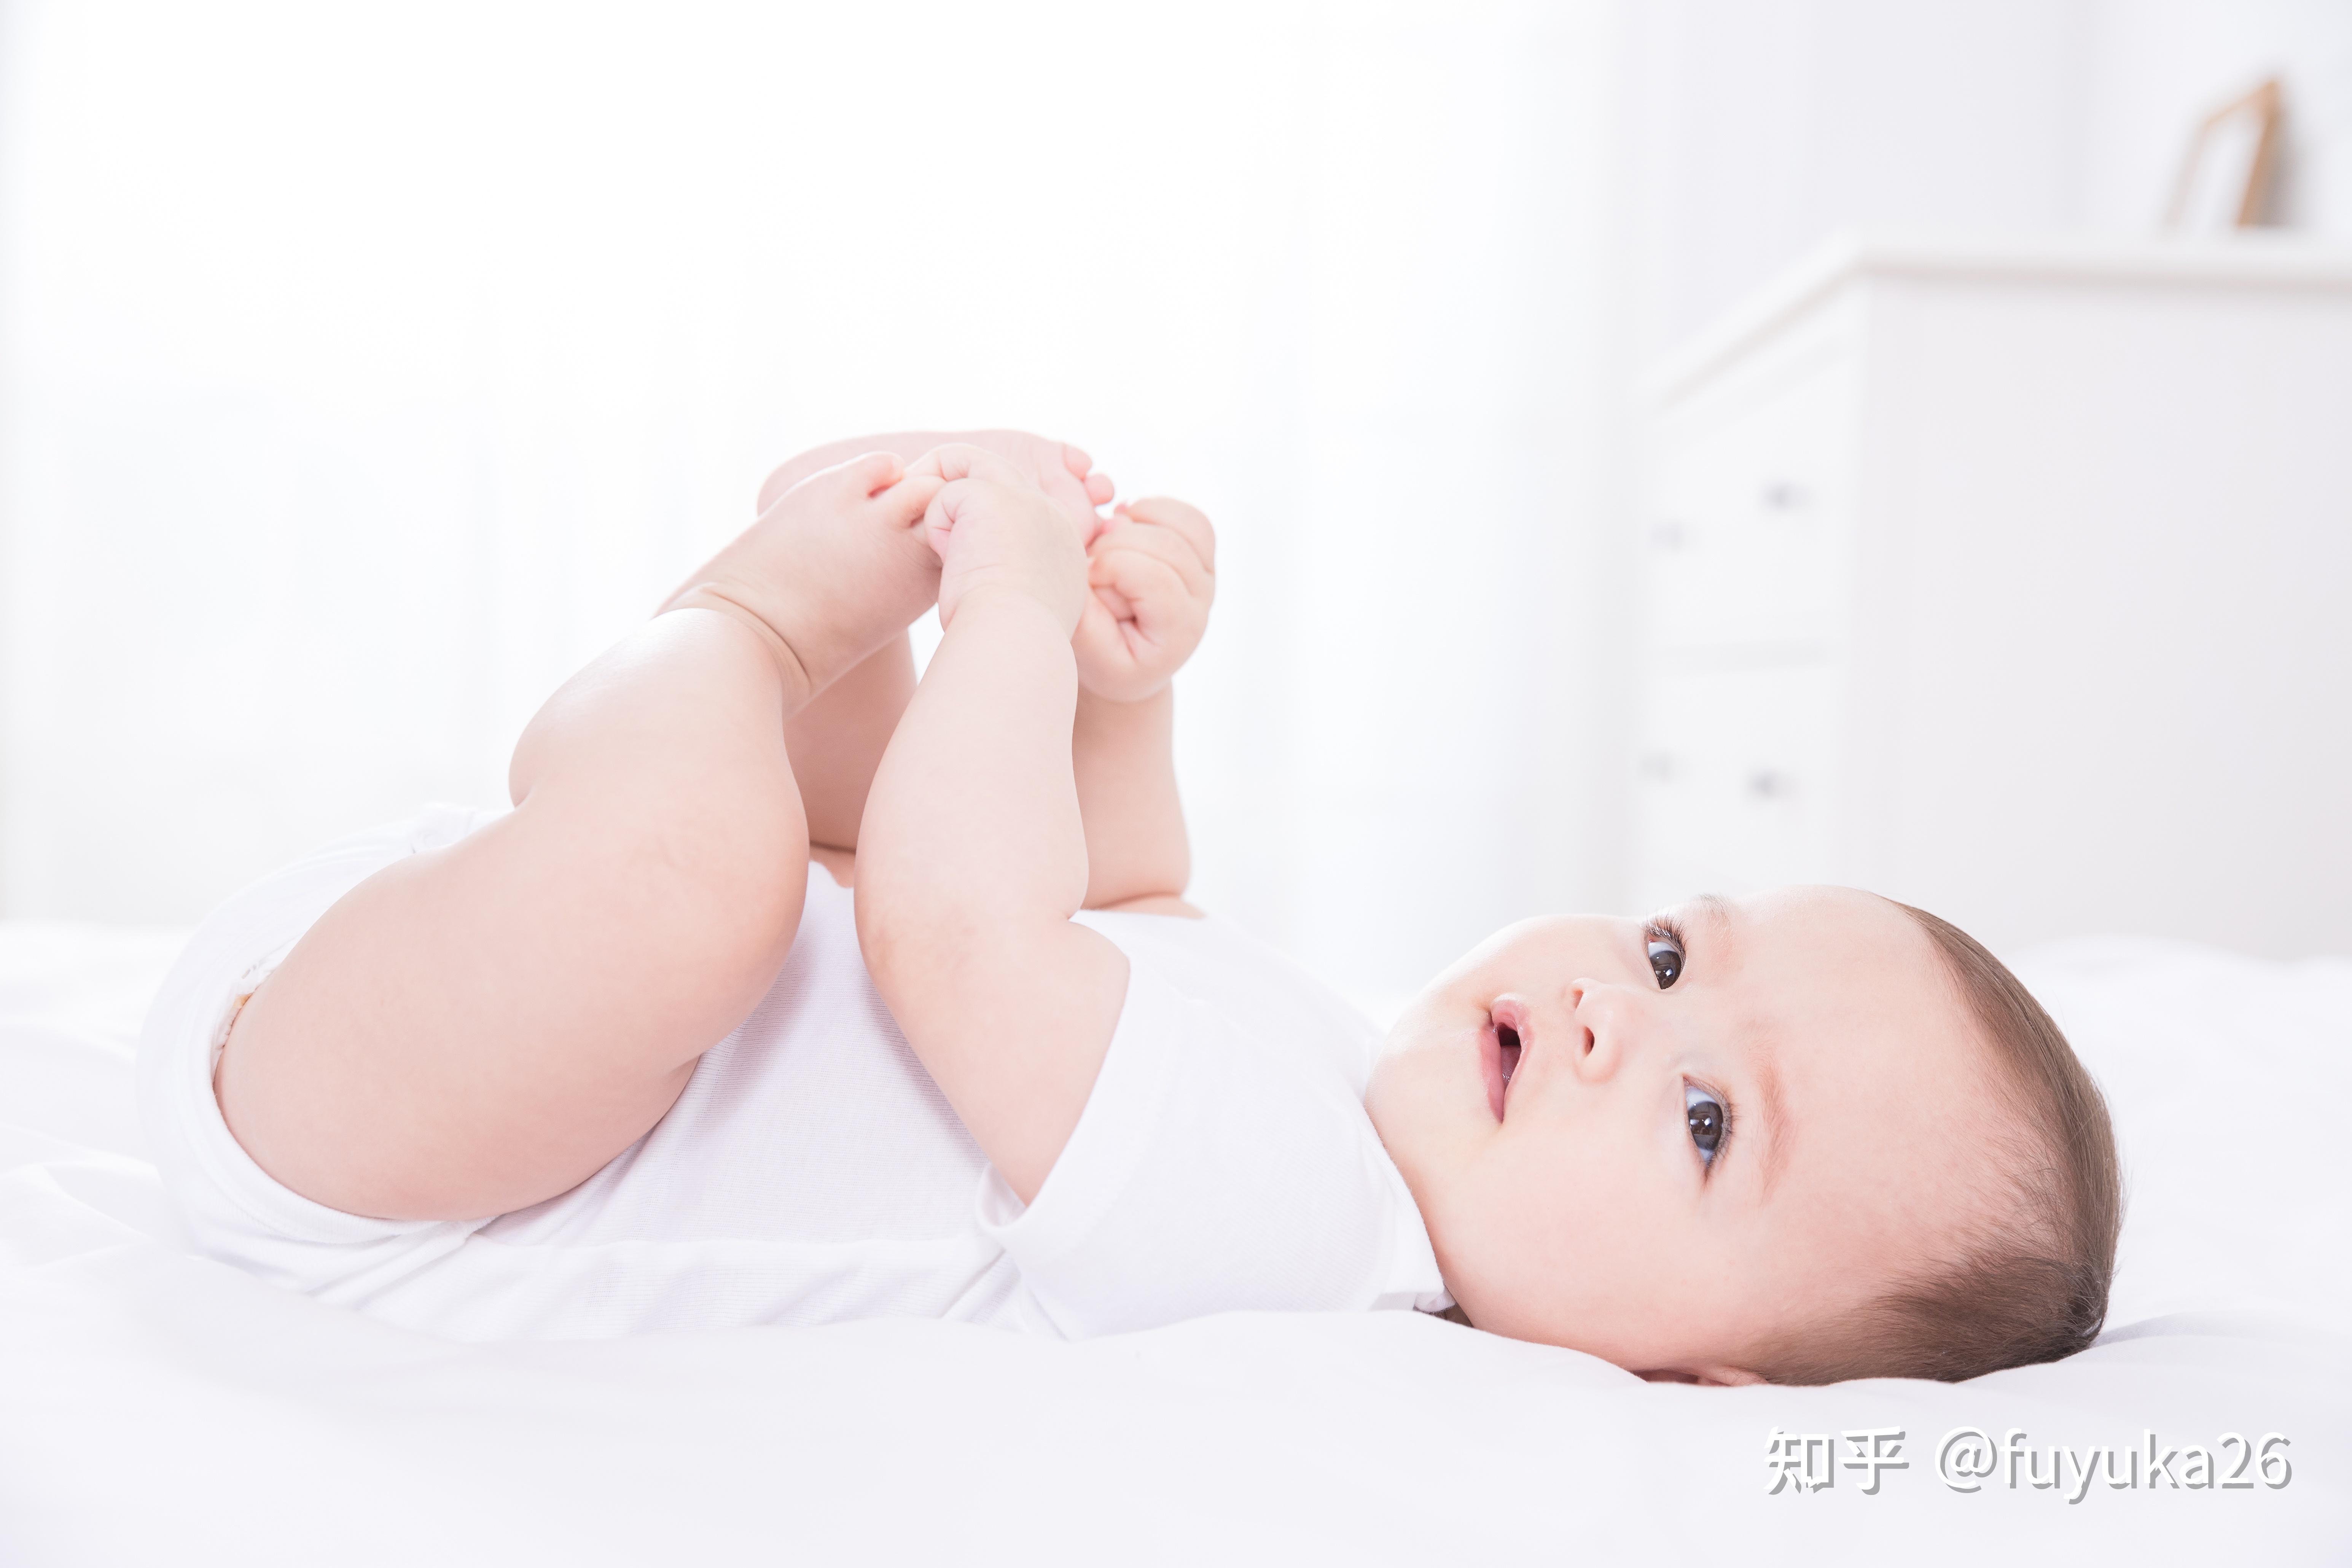 【婴儿脸上起小红疙瘩】【图】婴儿脸上起小红疙瘩怎么办 4步教你轻松应对婴儿脸上的小红疙瘩(2)_伊秀亲子|yxlady.com